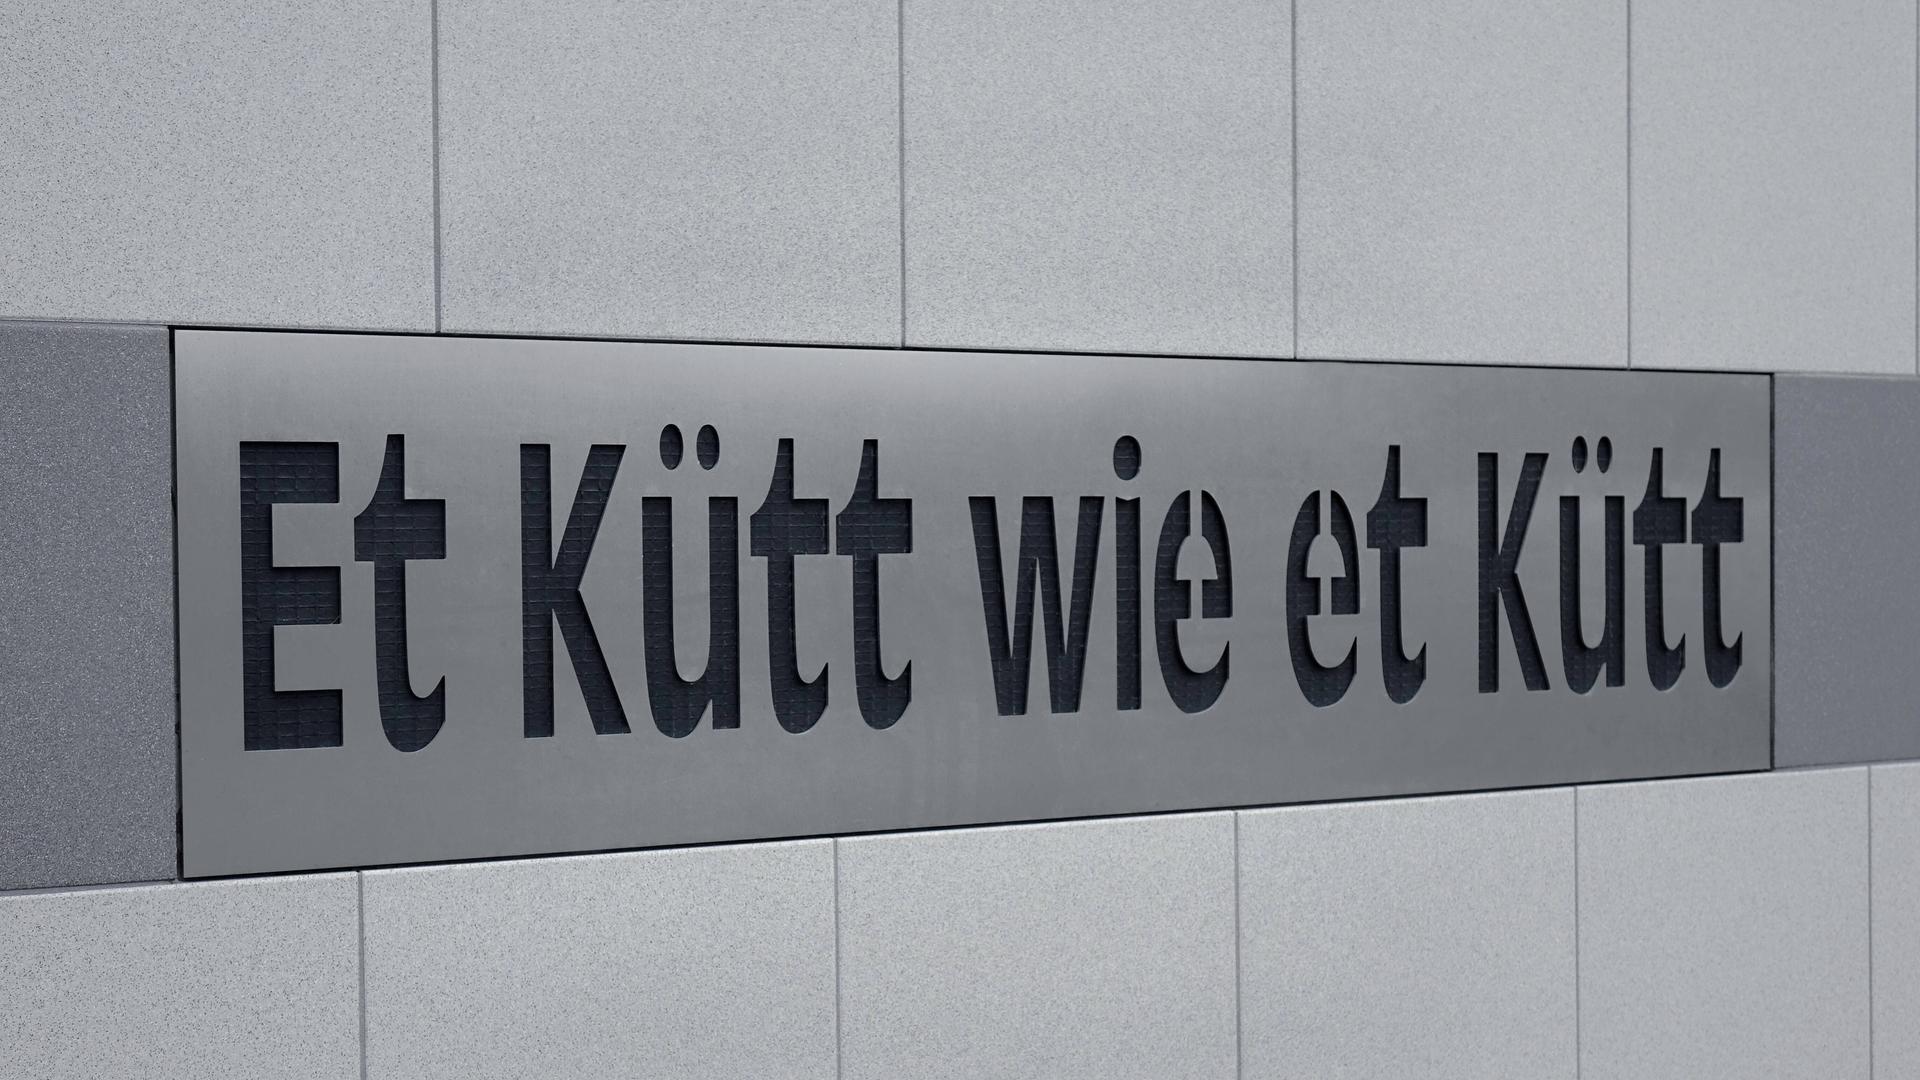 An einem Wohnhaus in Köln steht die Kölsche Redewendung "Et kütt wie et kütt".